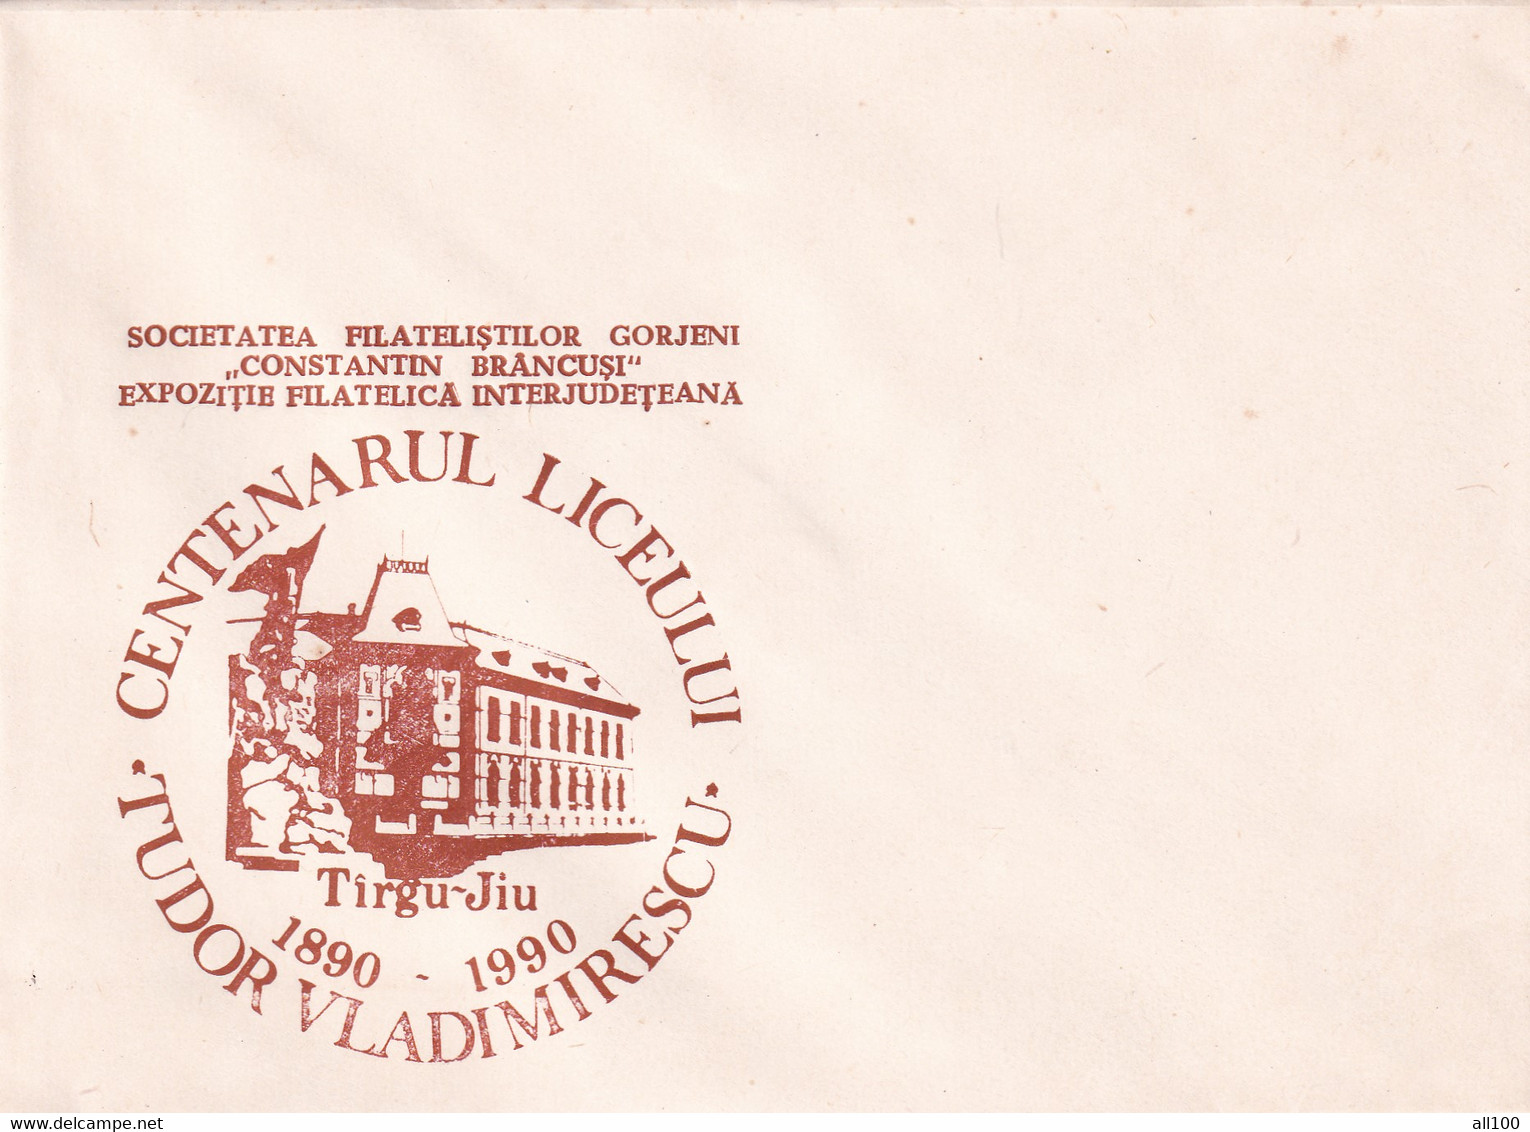 A19350 - CENTENARUL LICEULUI TUDOR VLADIMIRESCU TARGU JIU TIRGU-JIU COVER ENVELOPE UNUSED 1990 ROMANIA - Cartas & Documentos